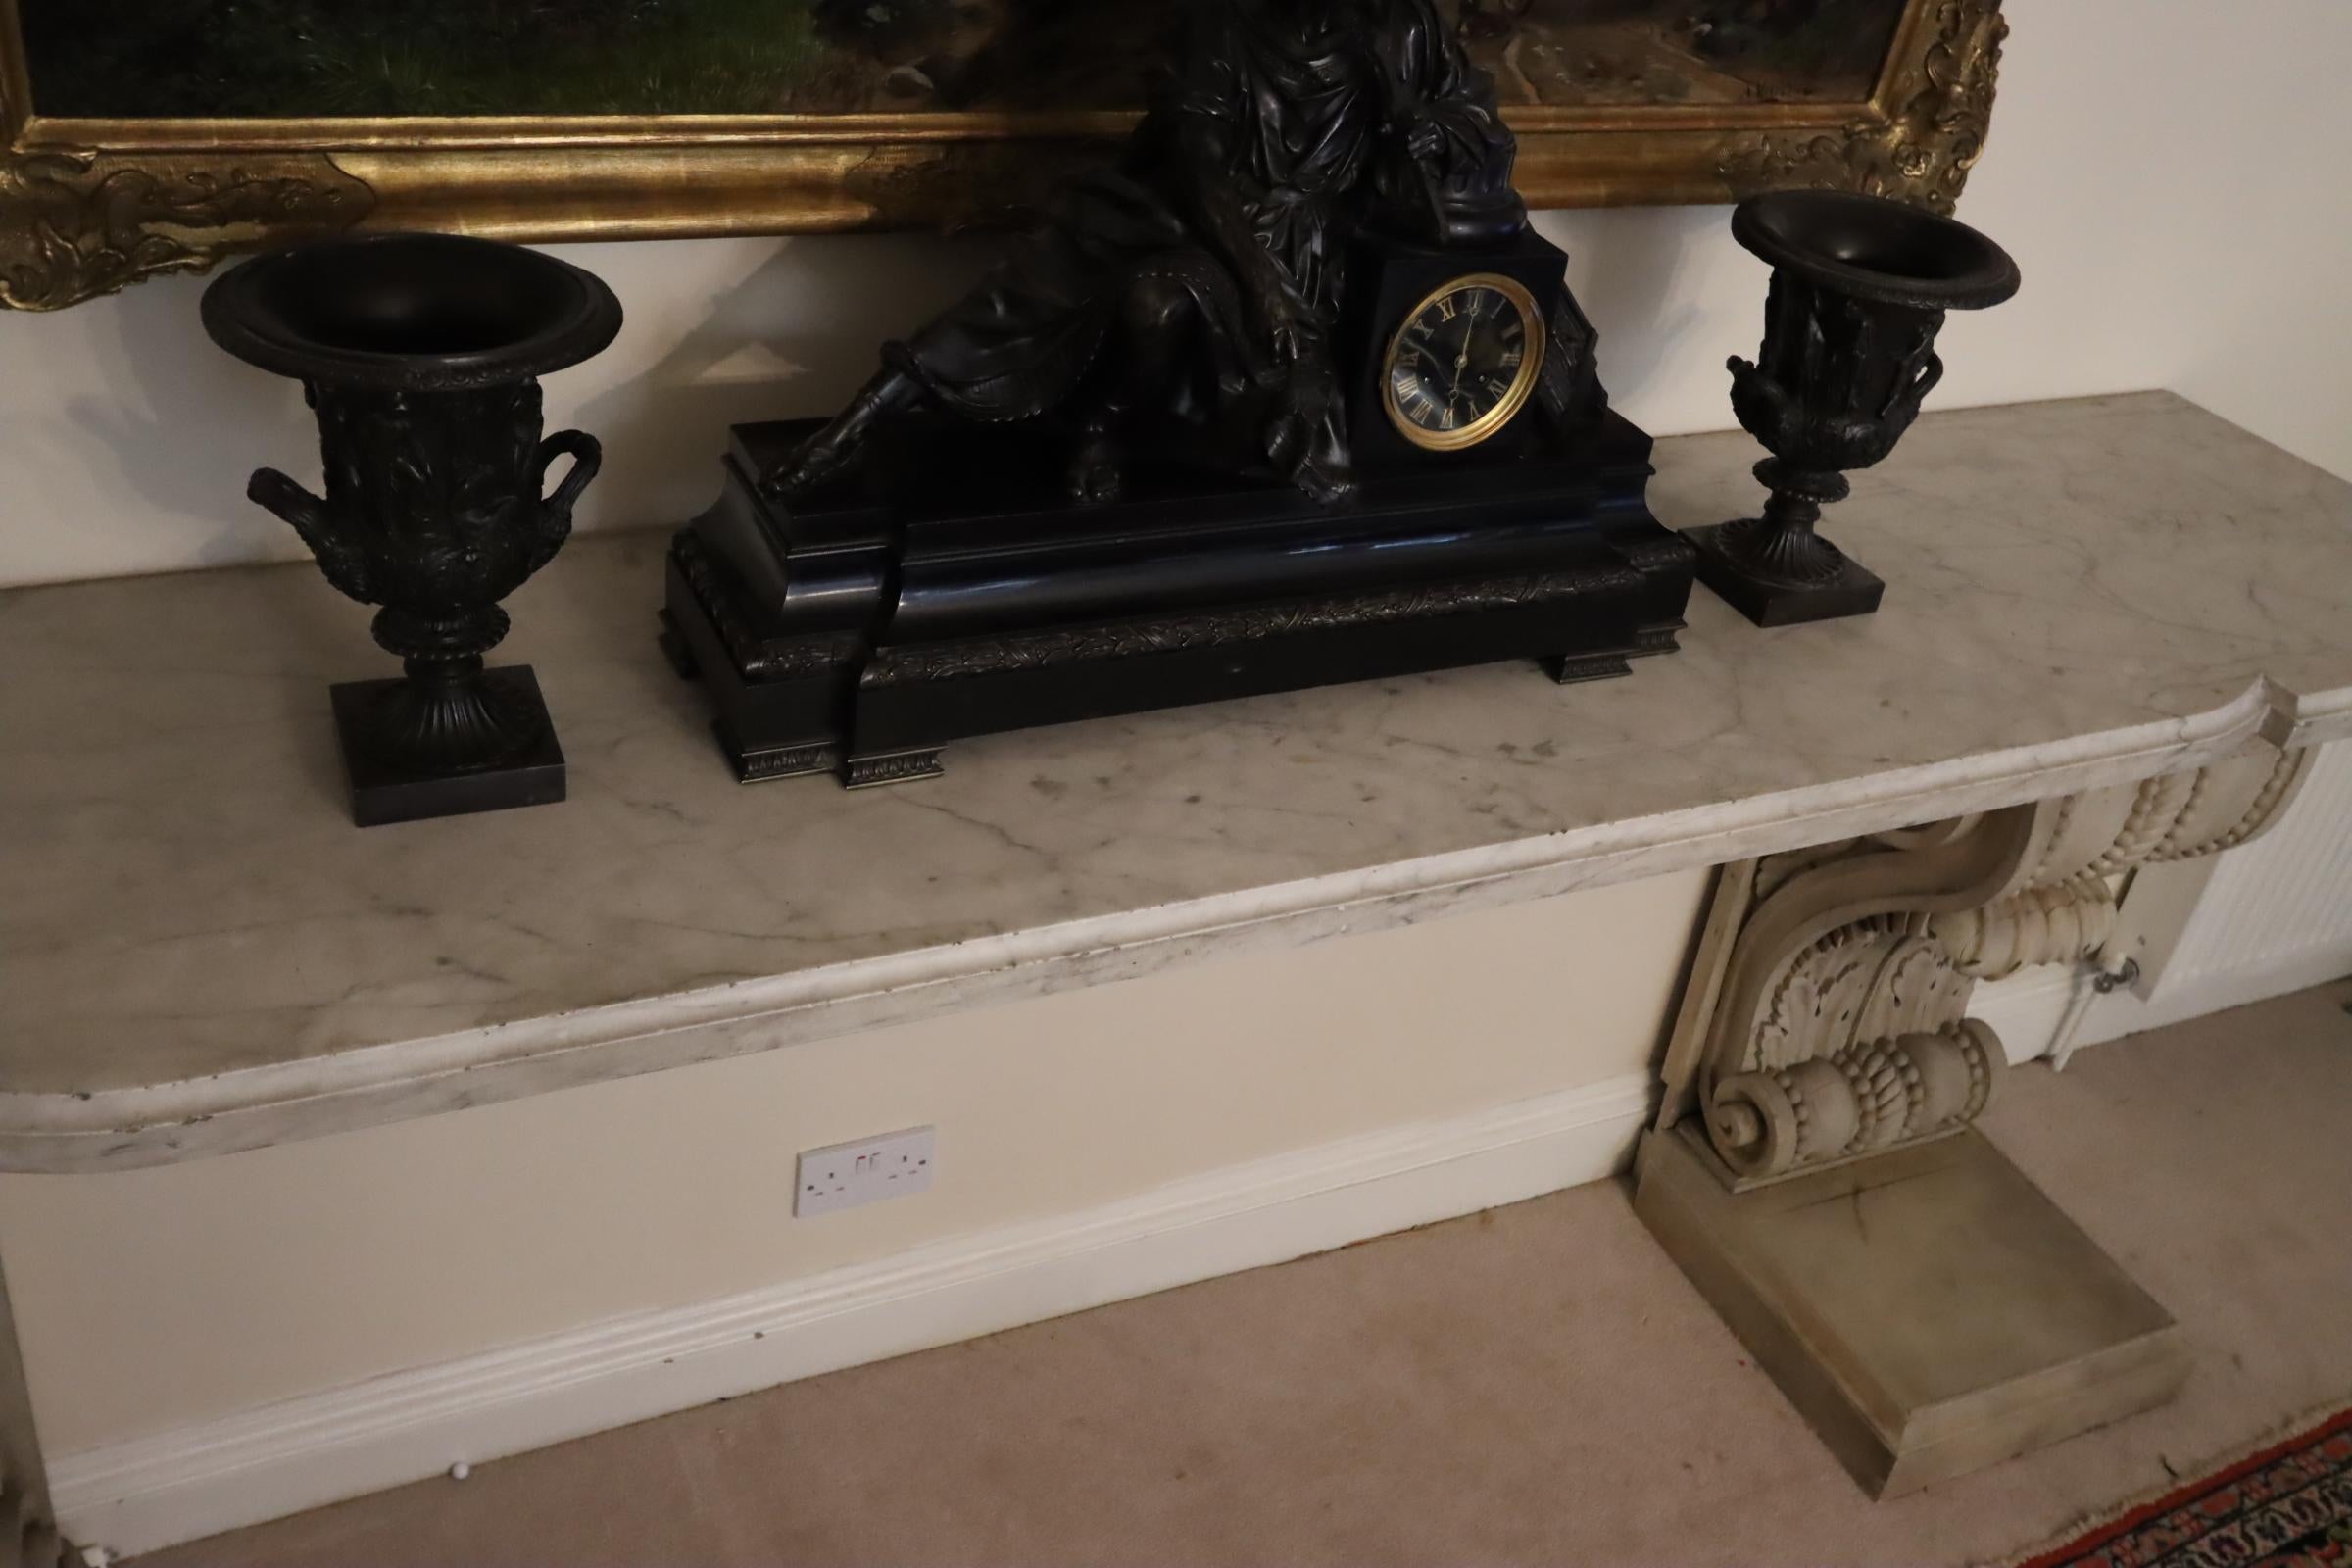 Wunderschöner Konsolentisch aus Marmor mit geschnitzten Holzsockeln aus dem 18. Jahrhundert. Dieses Stück hat große Proportionen und würde in jedem Raum, in dem es aufgestellt wird, einen Höhepunkt darstellen. Das passt sowohl in ein modernes als